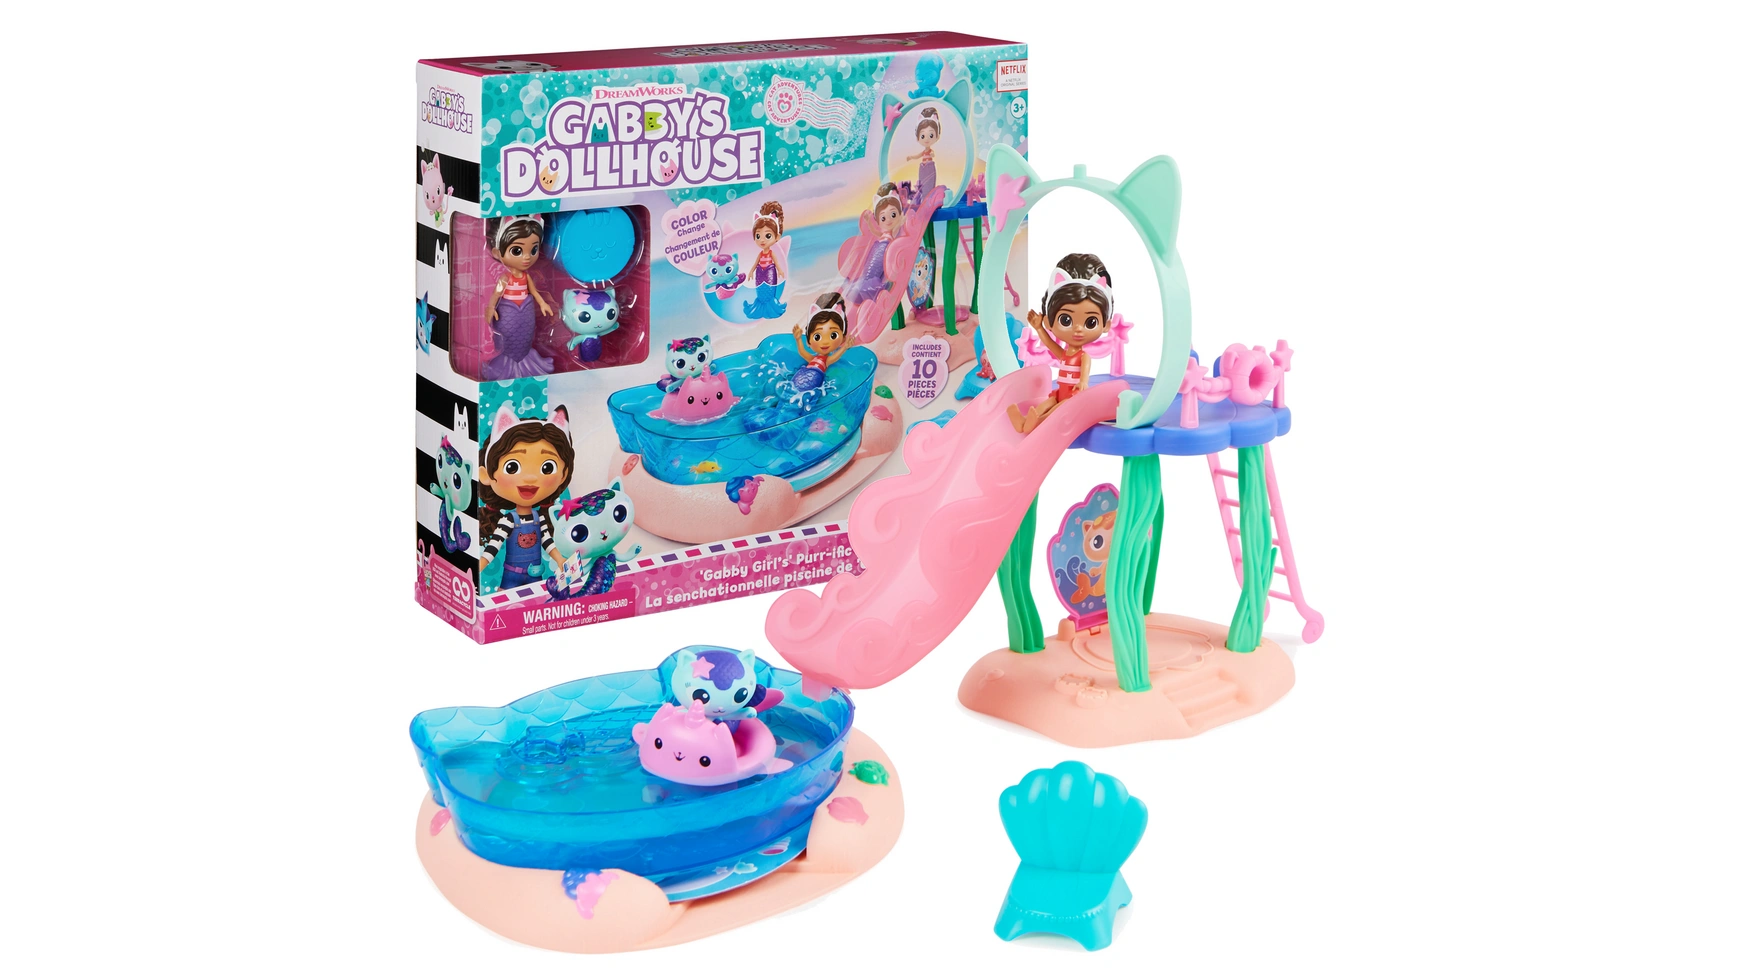 Gabbys Dollhouse Игровой набор Purrific для вечеринки у бассейна с фигурками Габби и морского котенка